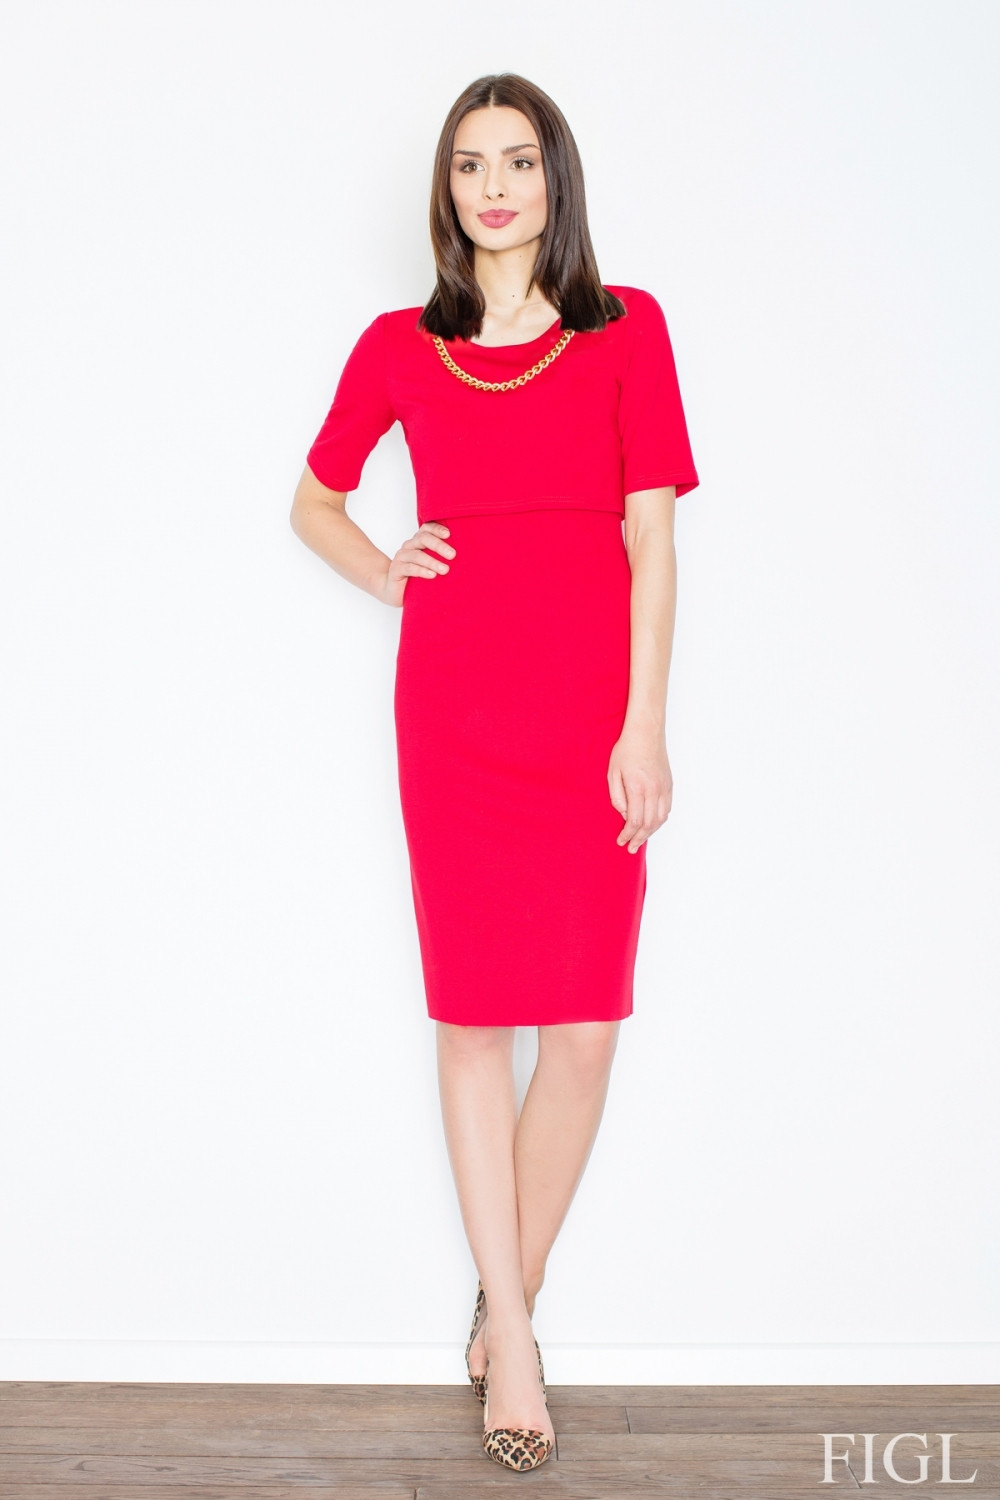 Dámské šaty model 5663694 red - Figl Barva: Červená, Velikost: L